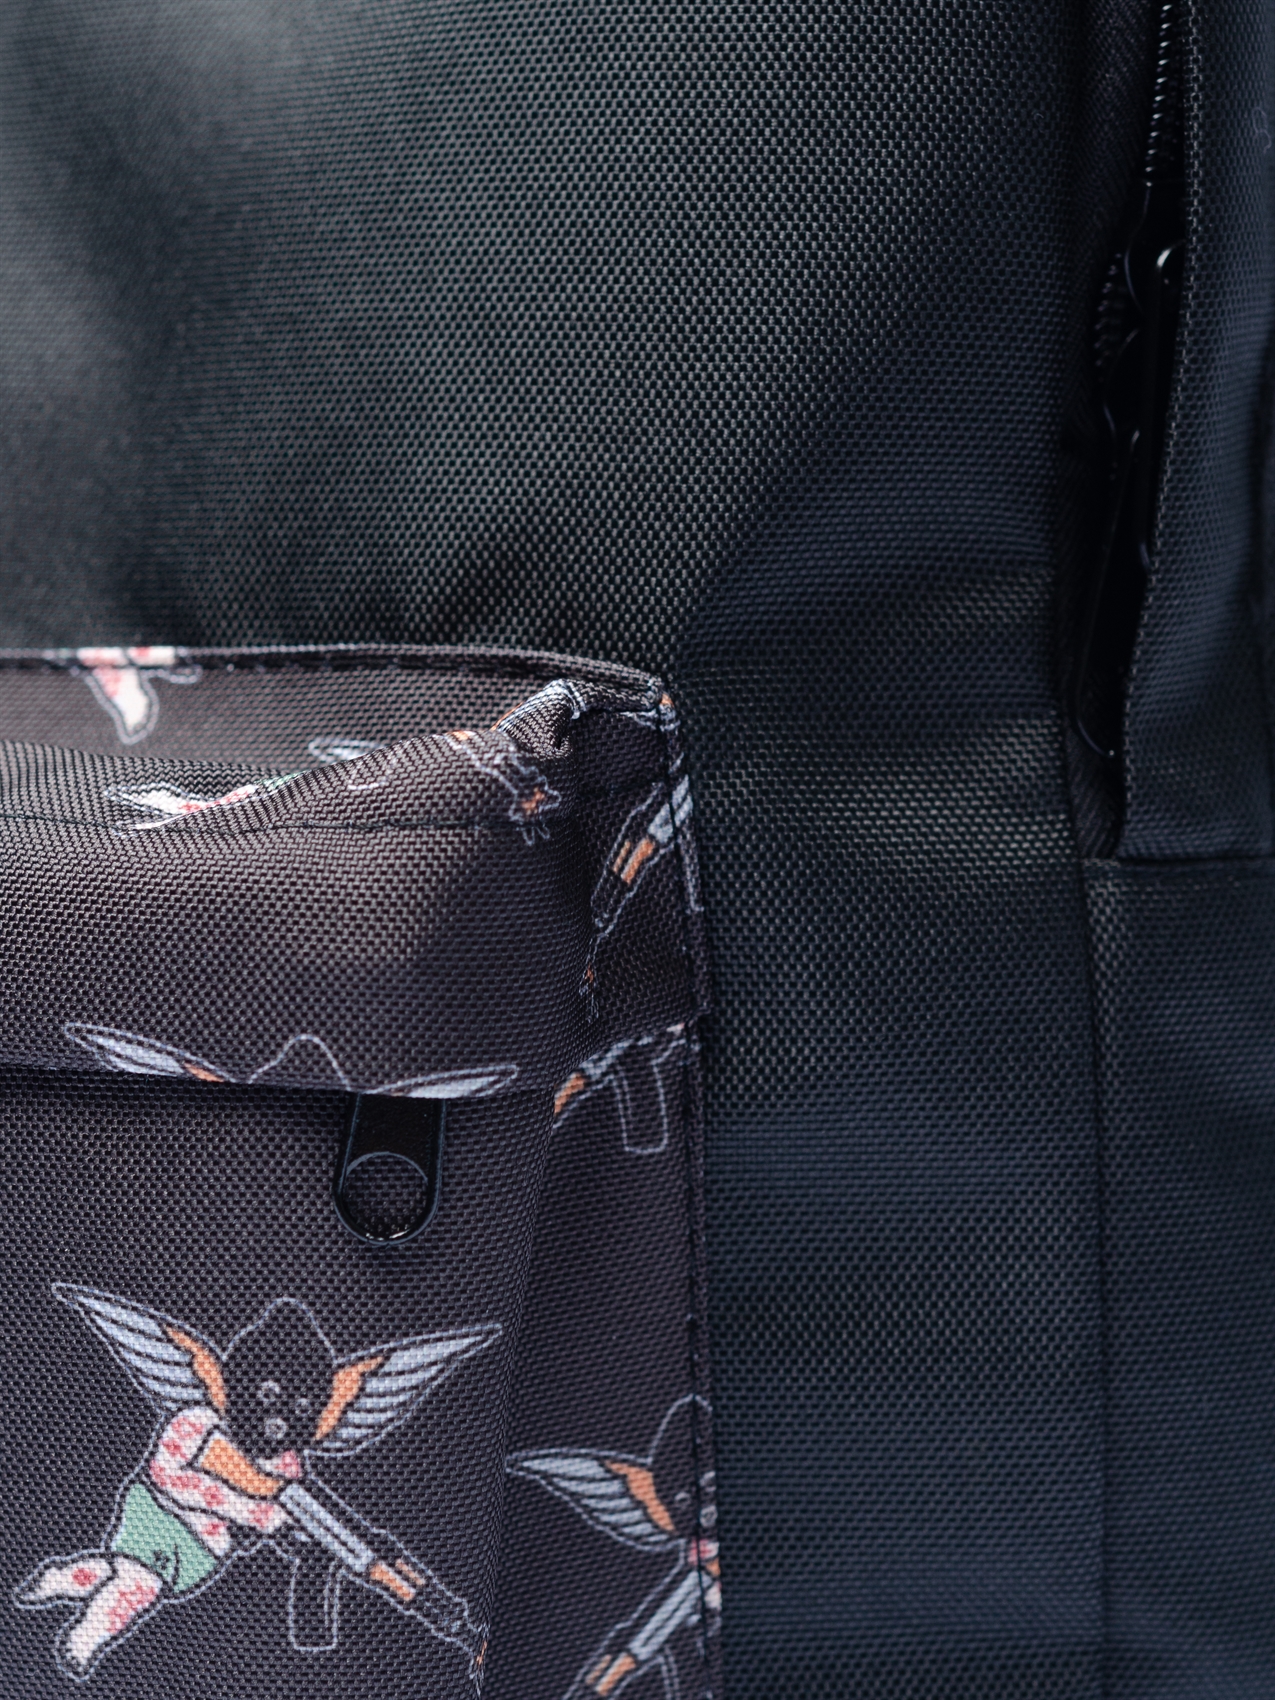 Рюкзак Oldy принт карман (черный, ангелы) - фото 37775